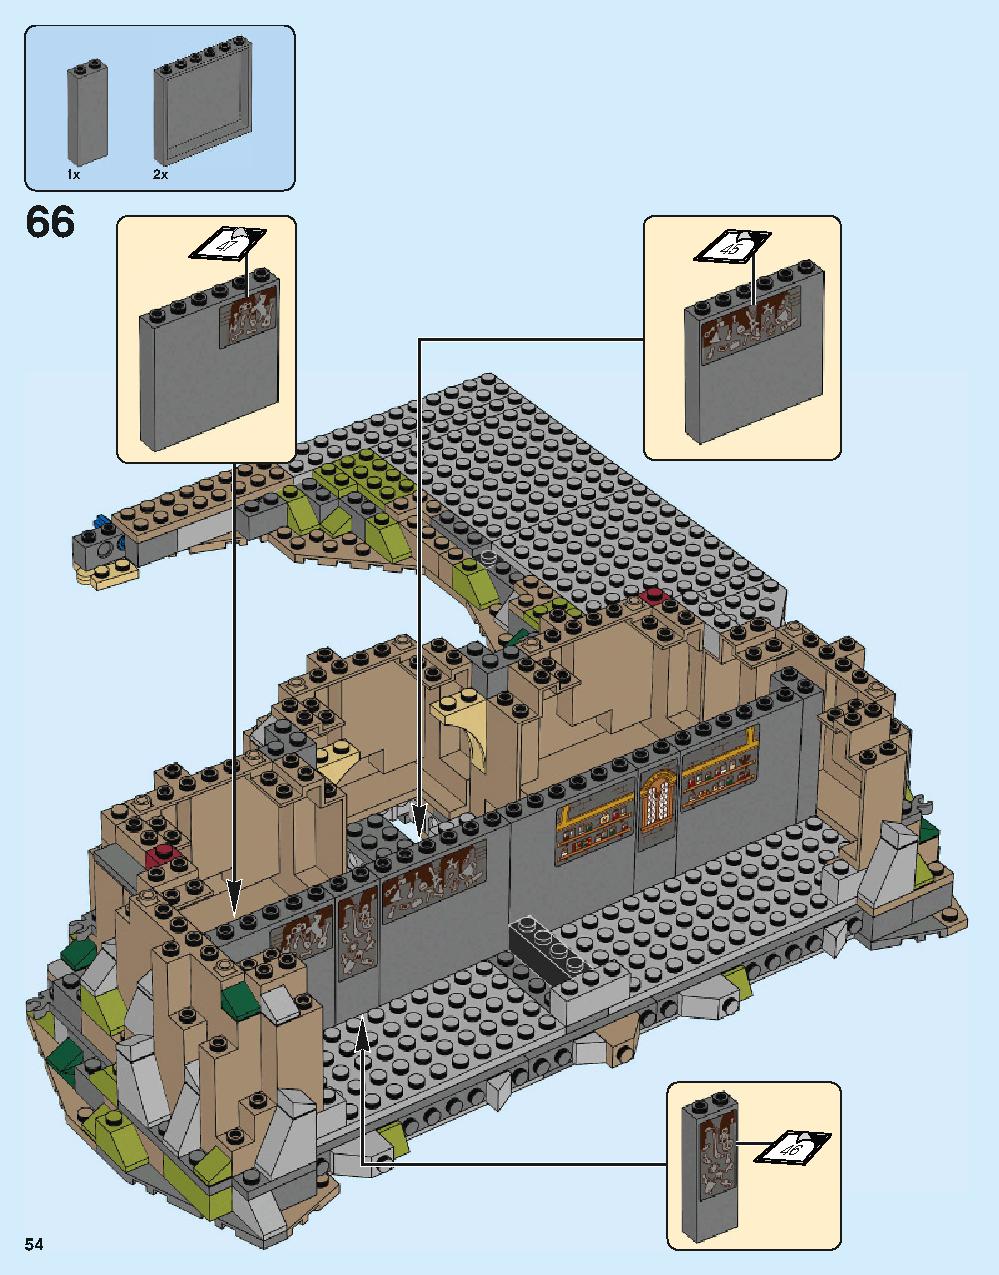 ホグワーツ城 71043 レゴの商品情報 レゴの説明書・組立方法 54 page